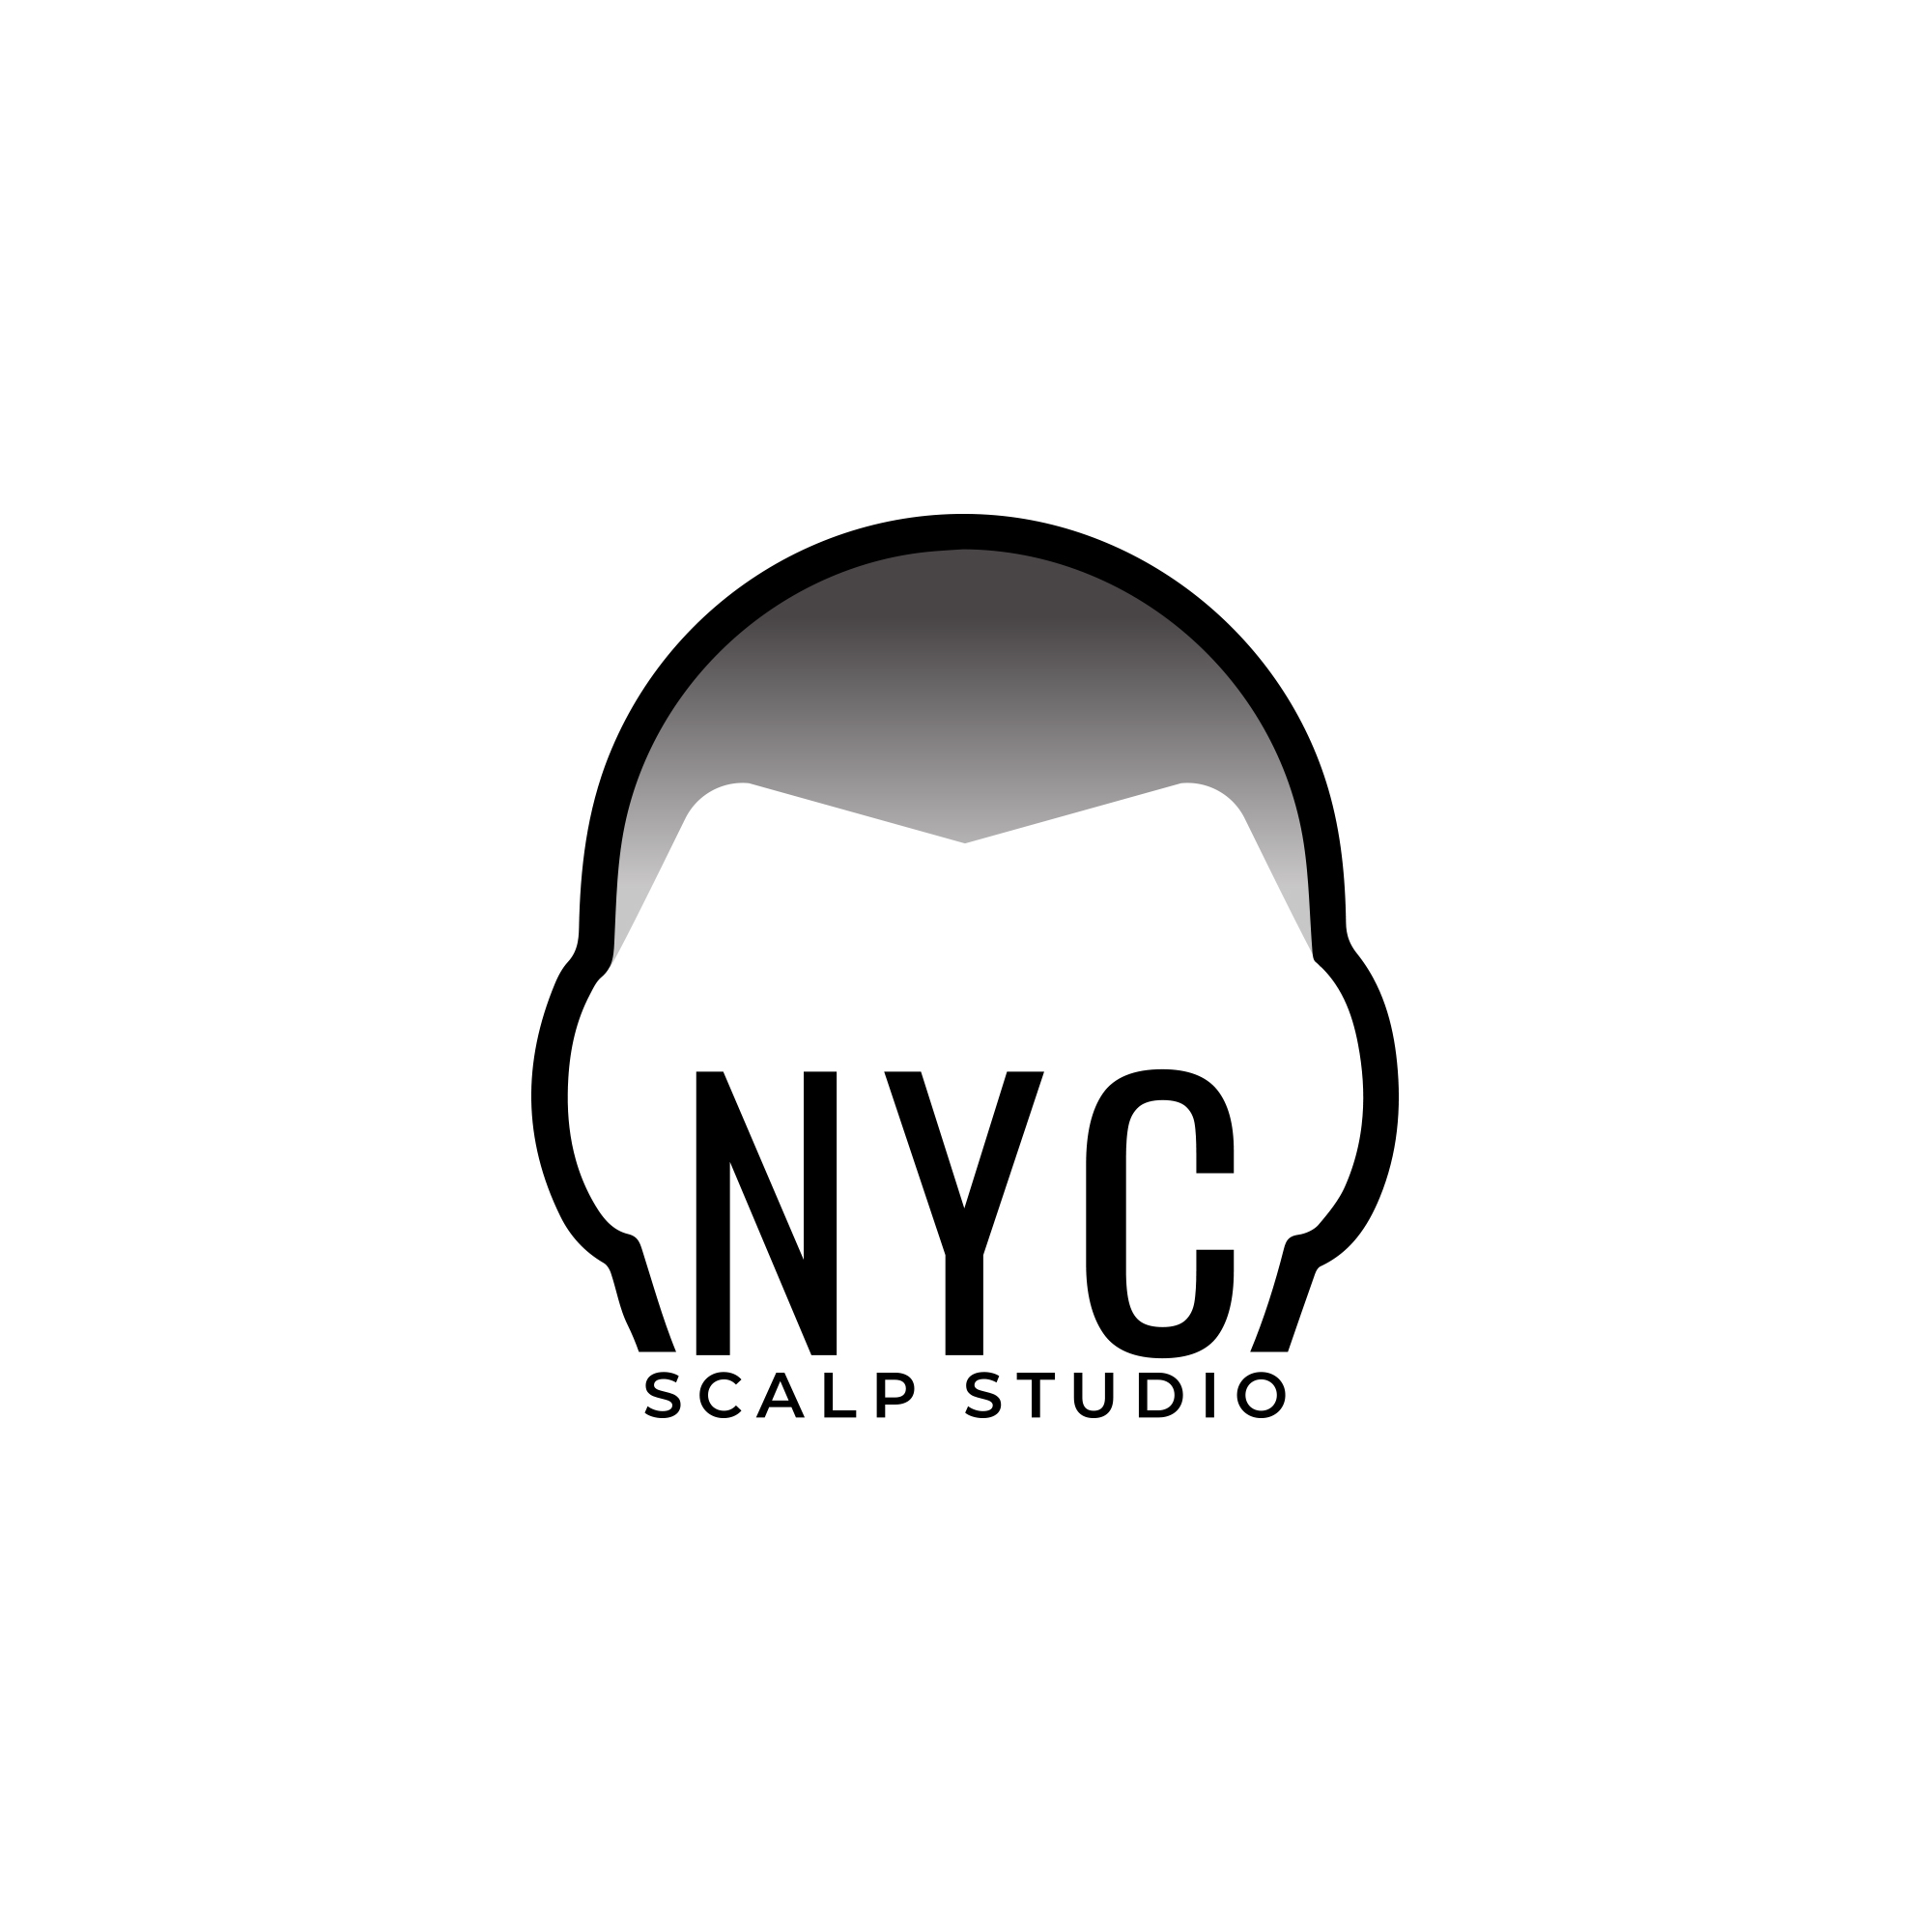 NYC Scalp Studio